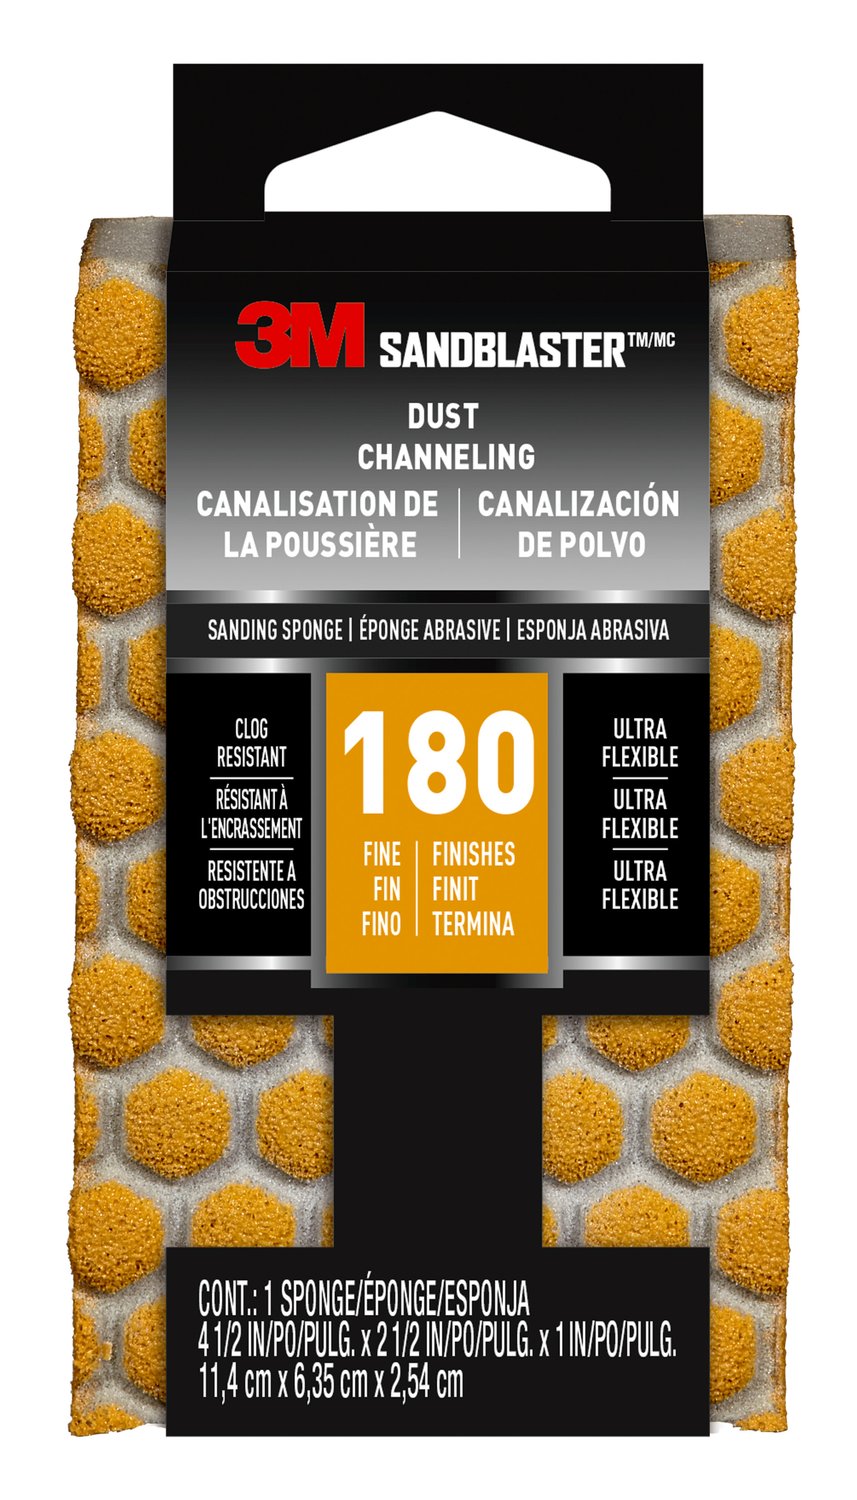 7100074382 - 3M SandBlaster DUST CHANNELING Sanding Sponge, 20907-180-UFS ,180
grit, 4 1/2 in x 2 1/2 x 1 in, 1/pk